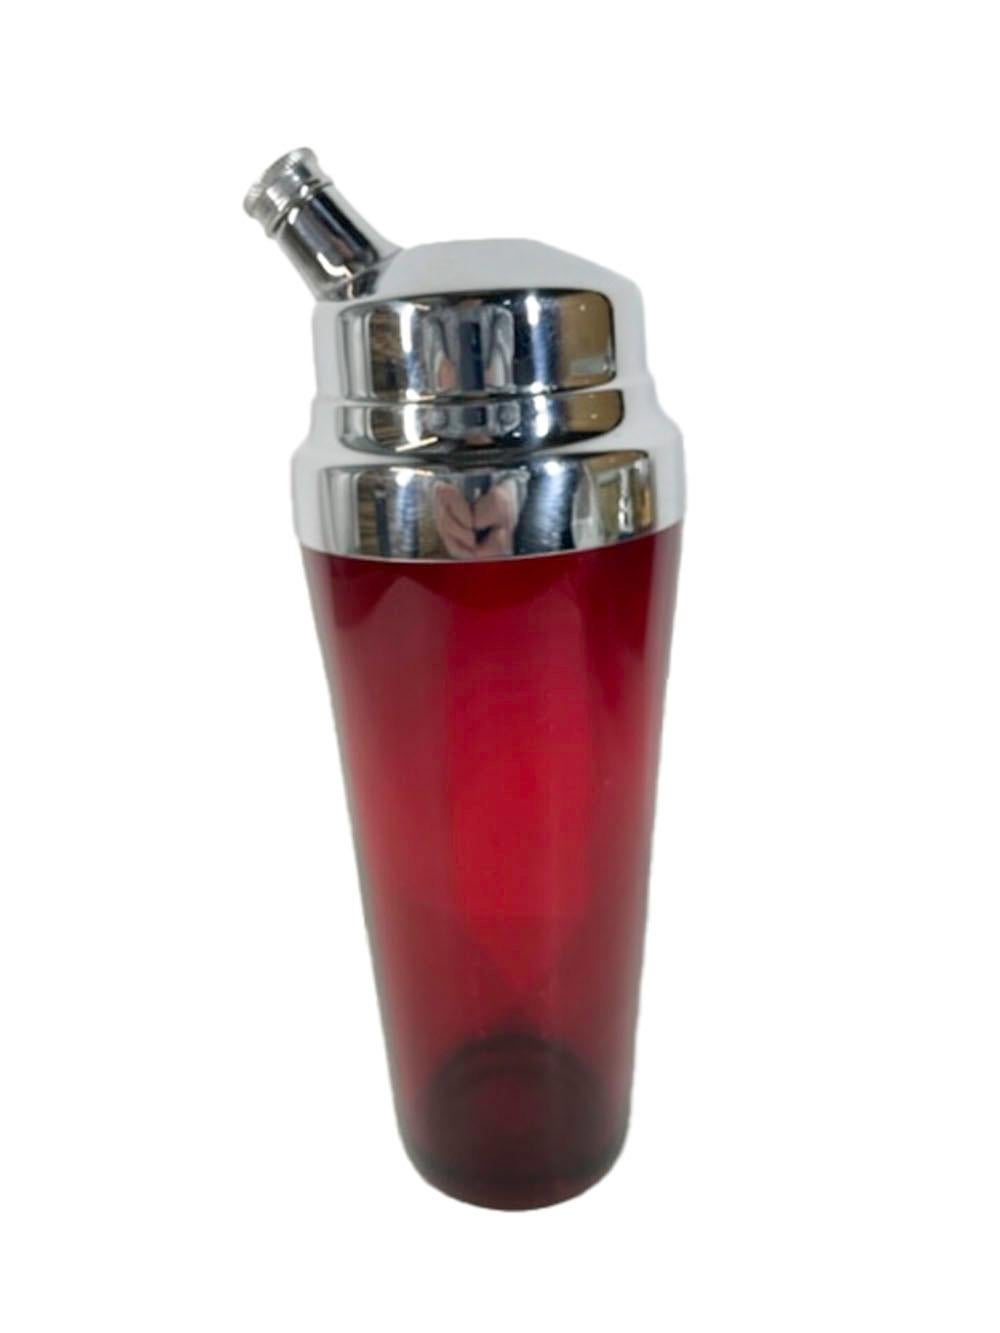 Shaker en verre rouge rubis avec un couvercle chromé haut de gamme avec un bec verseur latéral.